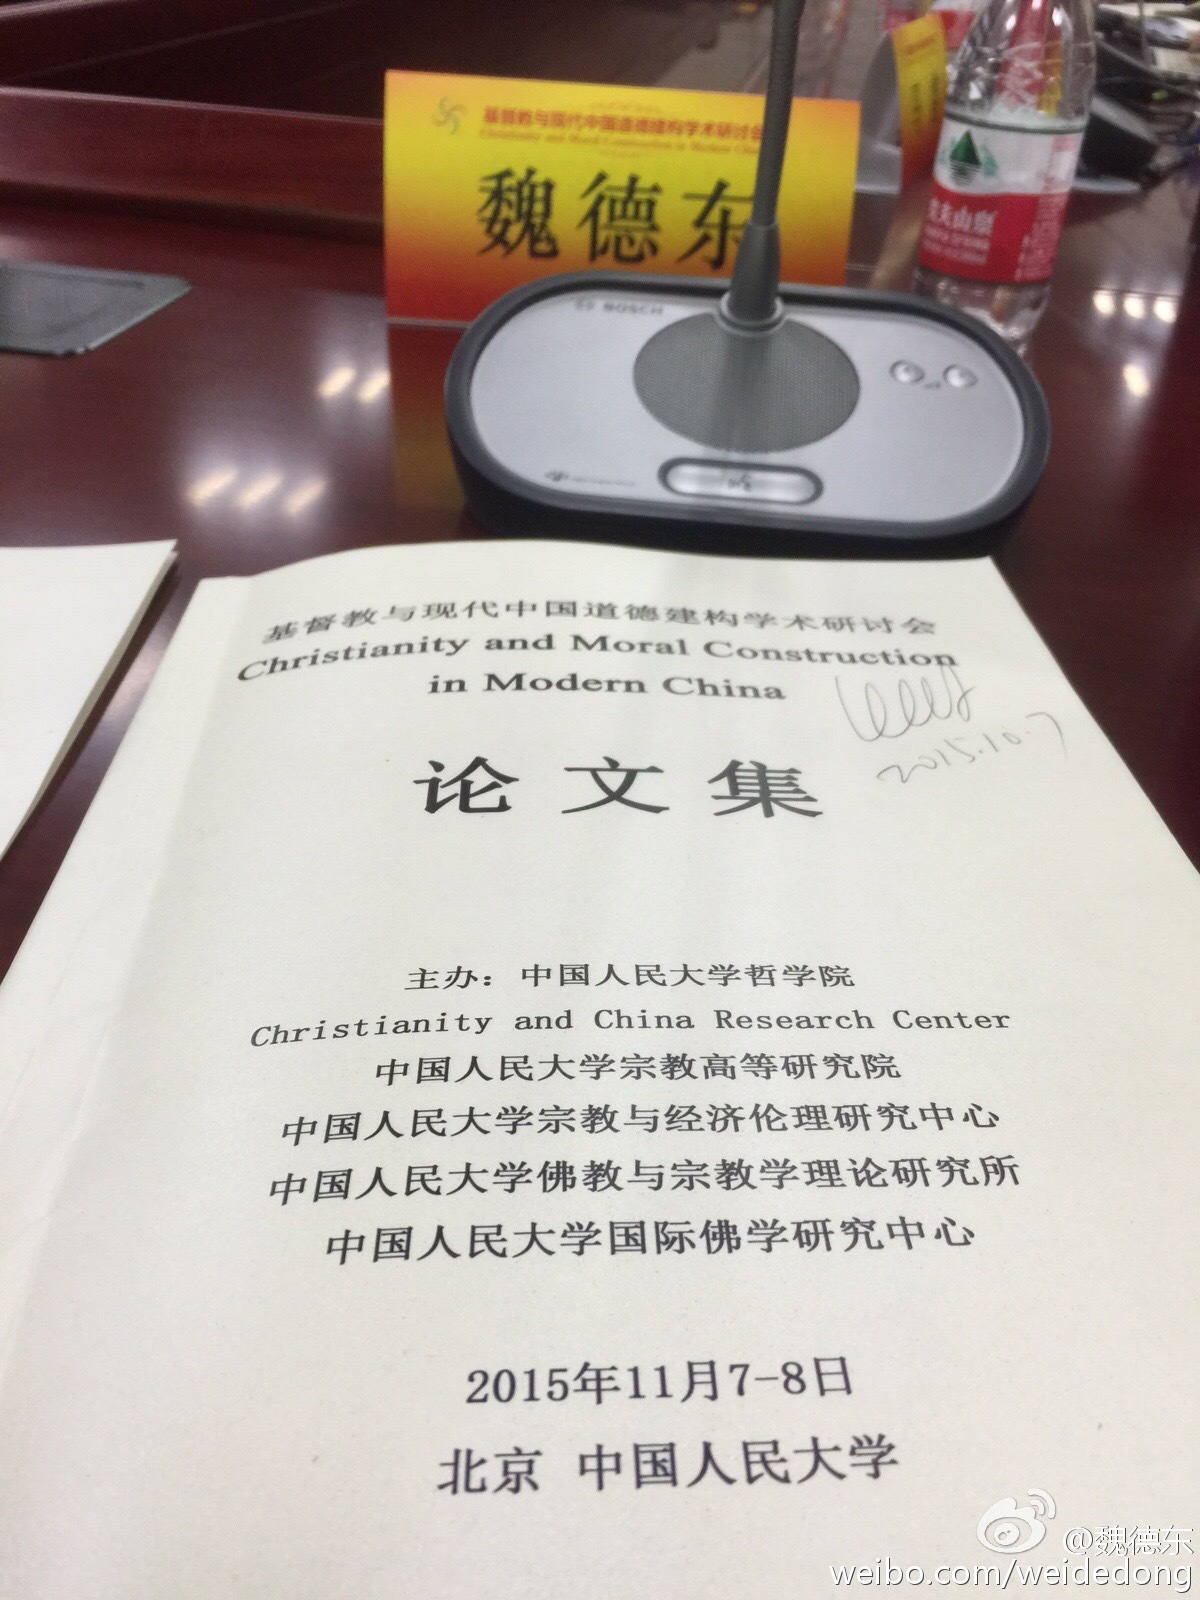 基督教与现代中国道德建构学术研讨会在京召开